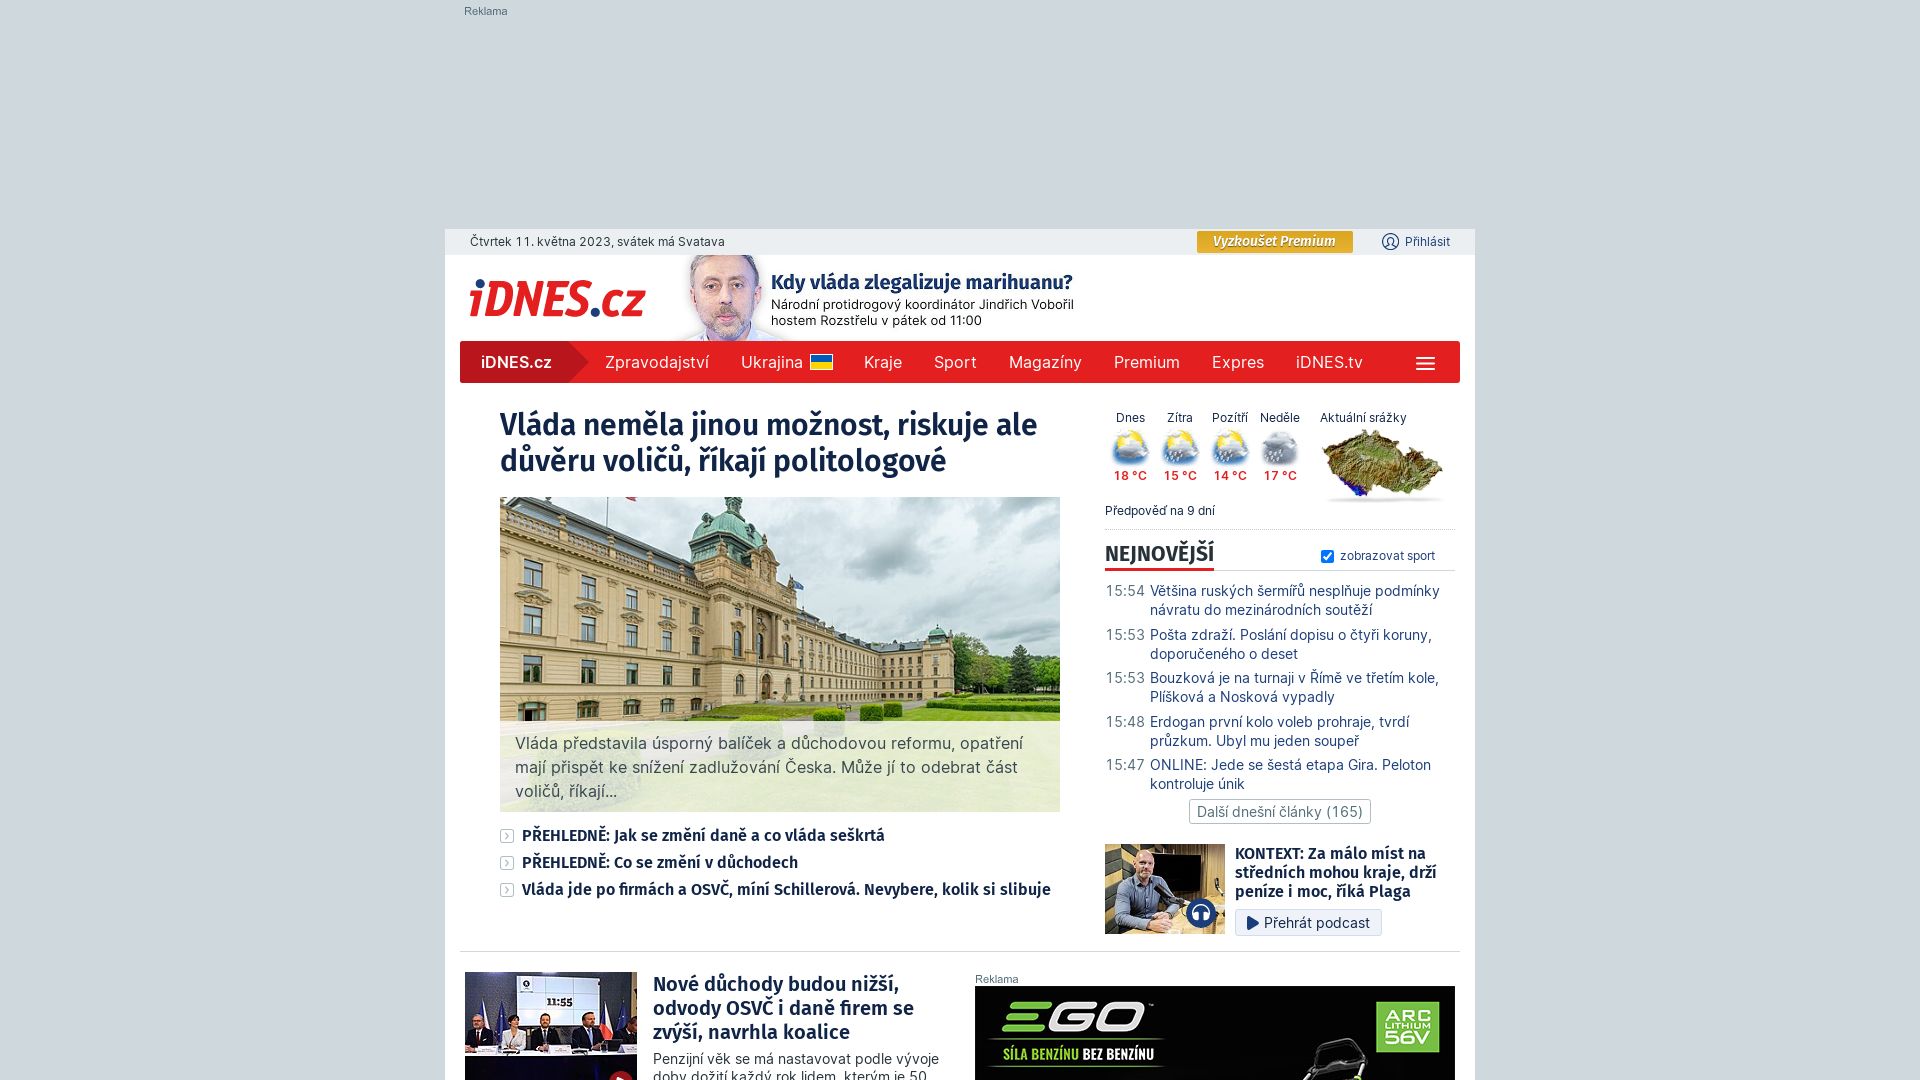 État du site web idnes.cz est   EN LIGNE